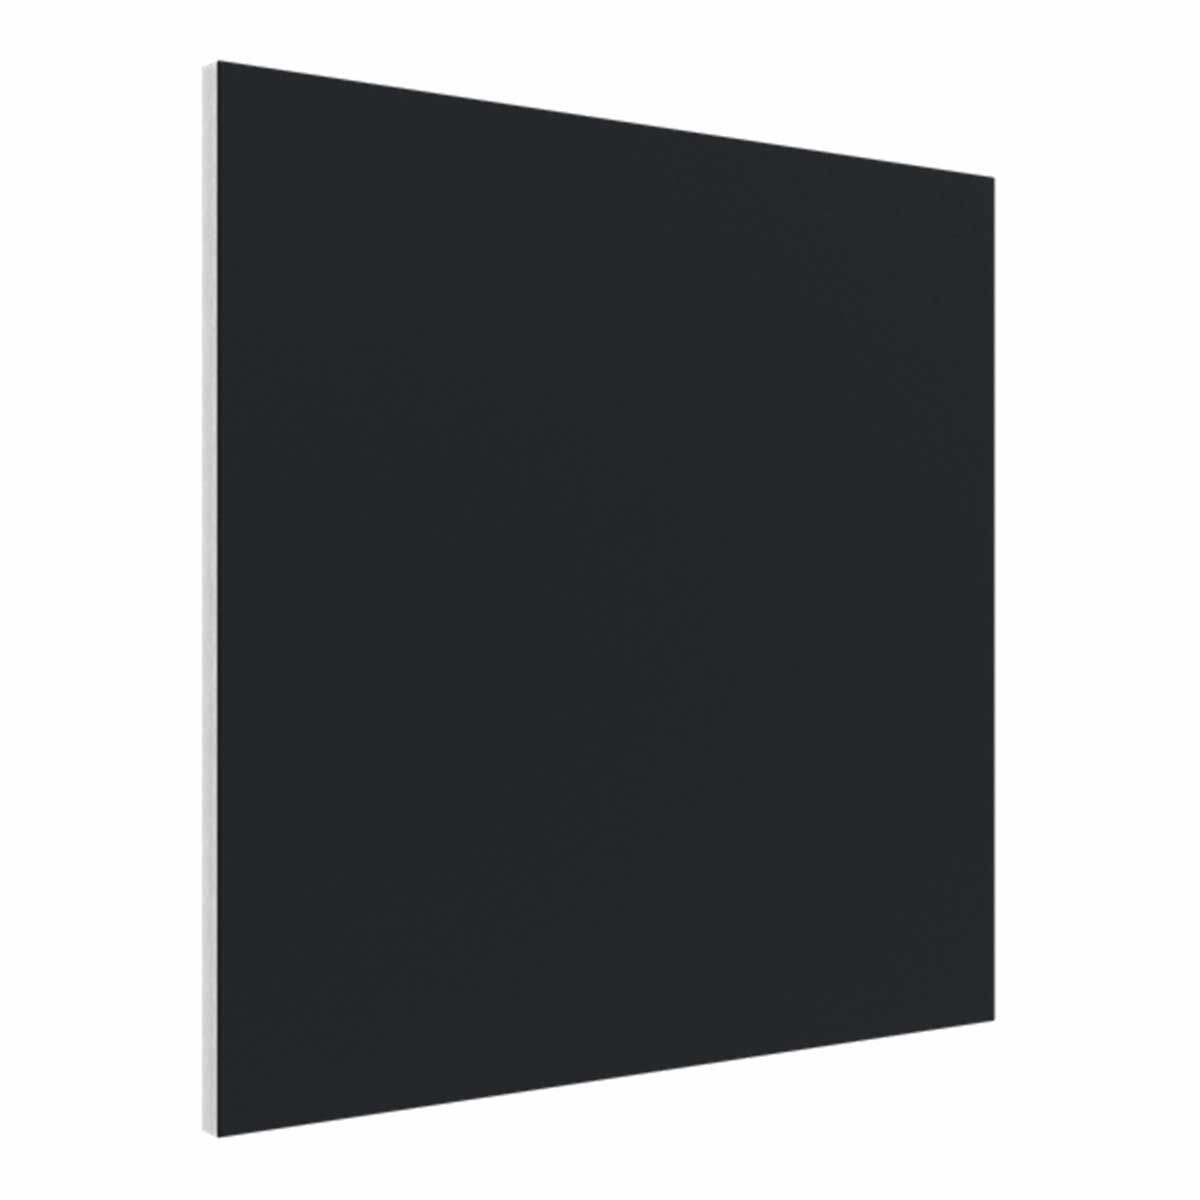 Vicoustic Flat Panel VMT, Square, Black